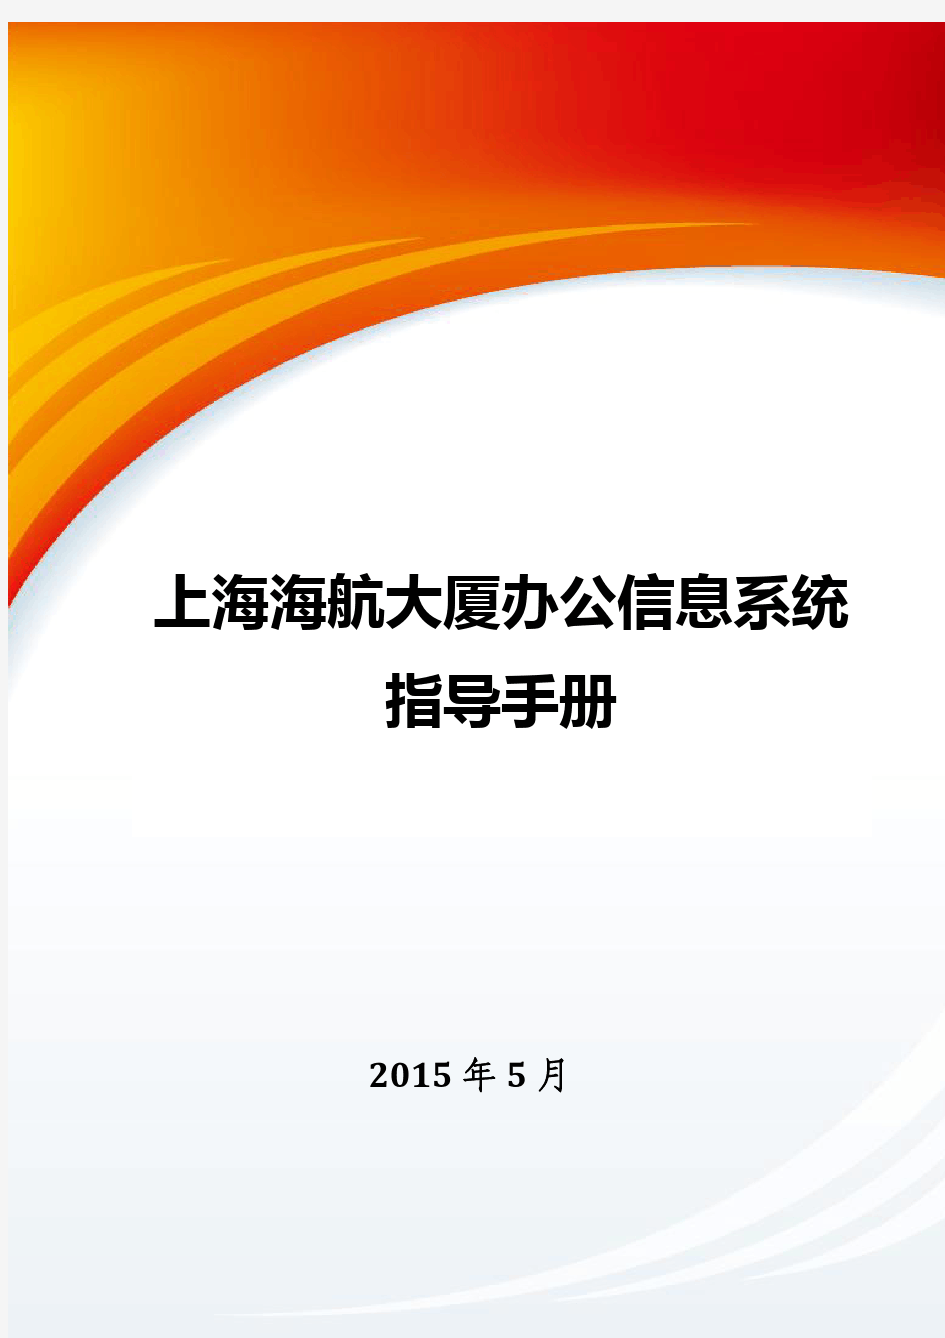 上海海航大厦办公信息系统指导手册